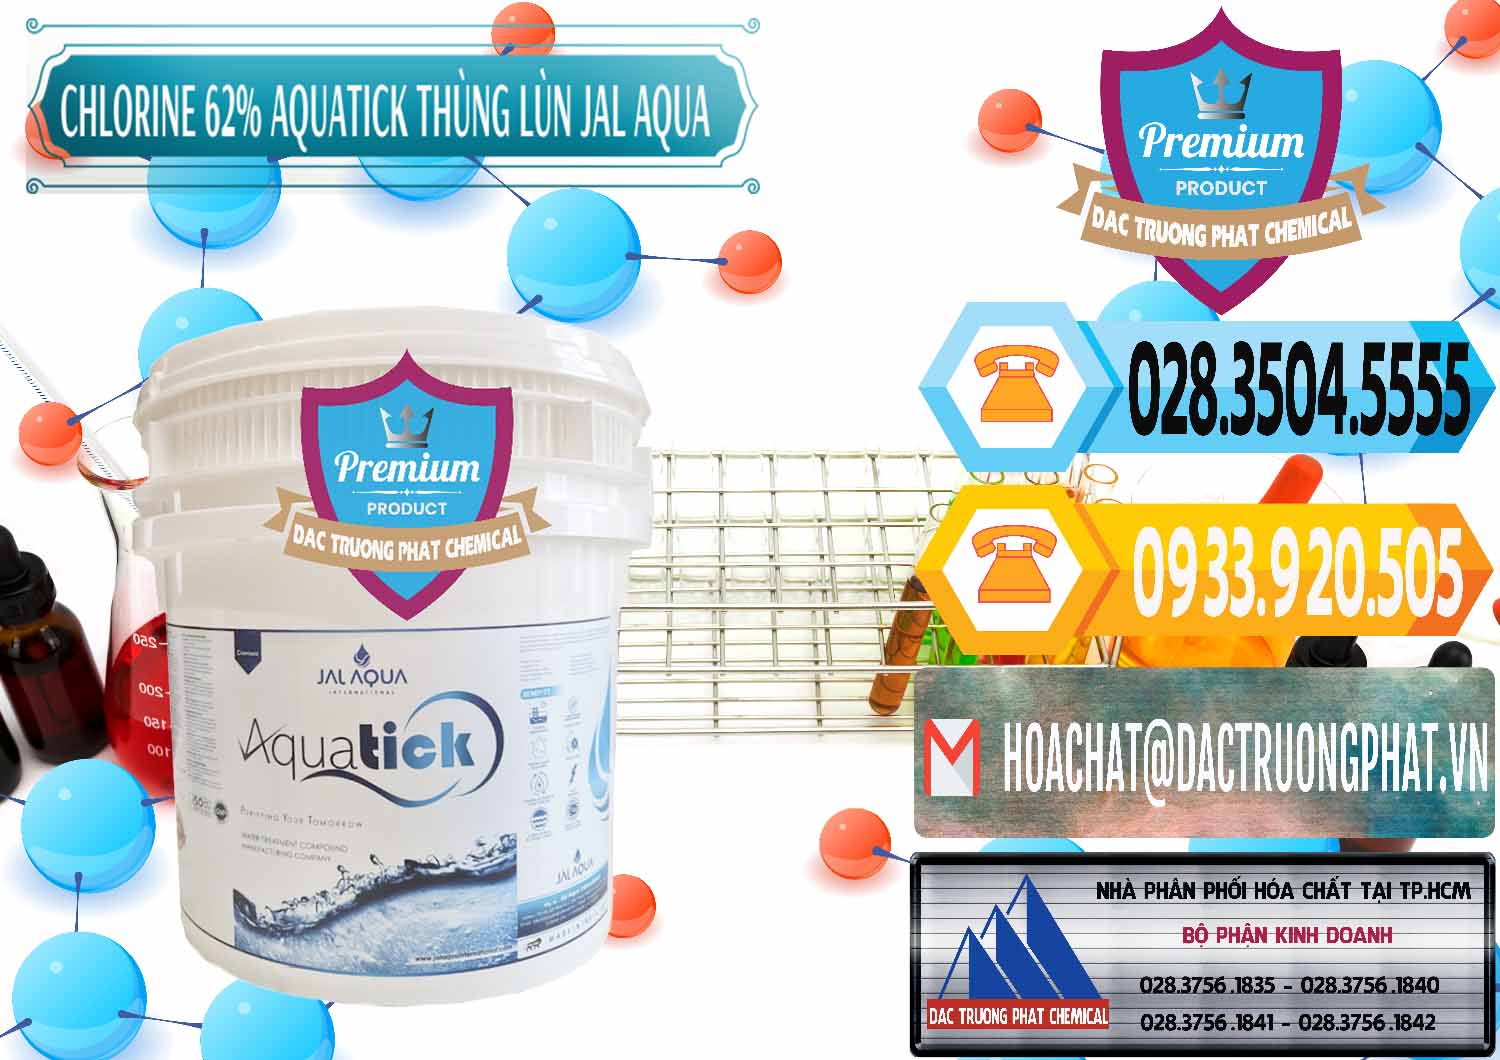 Nhà cung cấp - bán Chlorine – Clorin 62% Aquatick Thùng Lùn Jal Aqua Ấn Độ India - 0238 - Nhà phân phối và cung cấp hóa chất tại TP.HCM - hoachattayrua.net